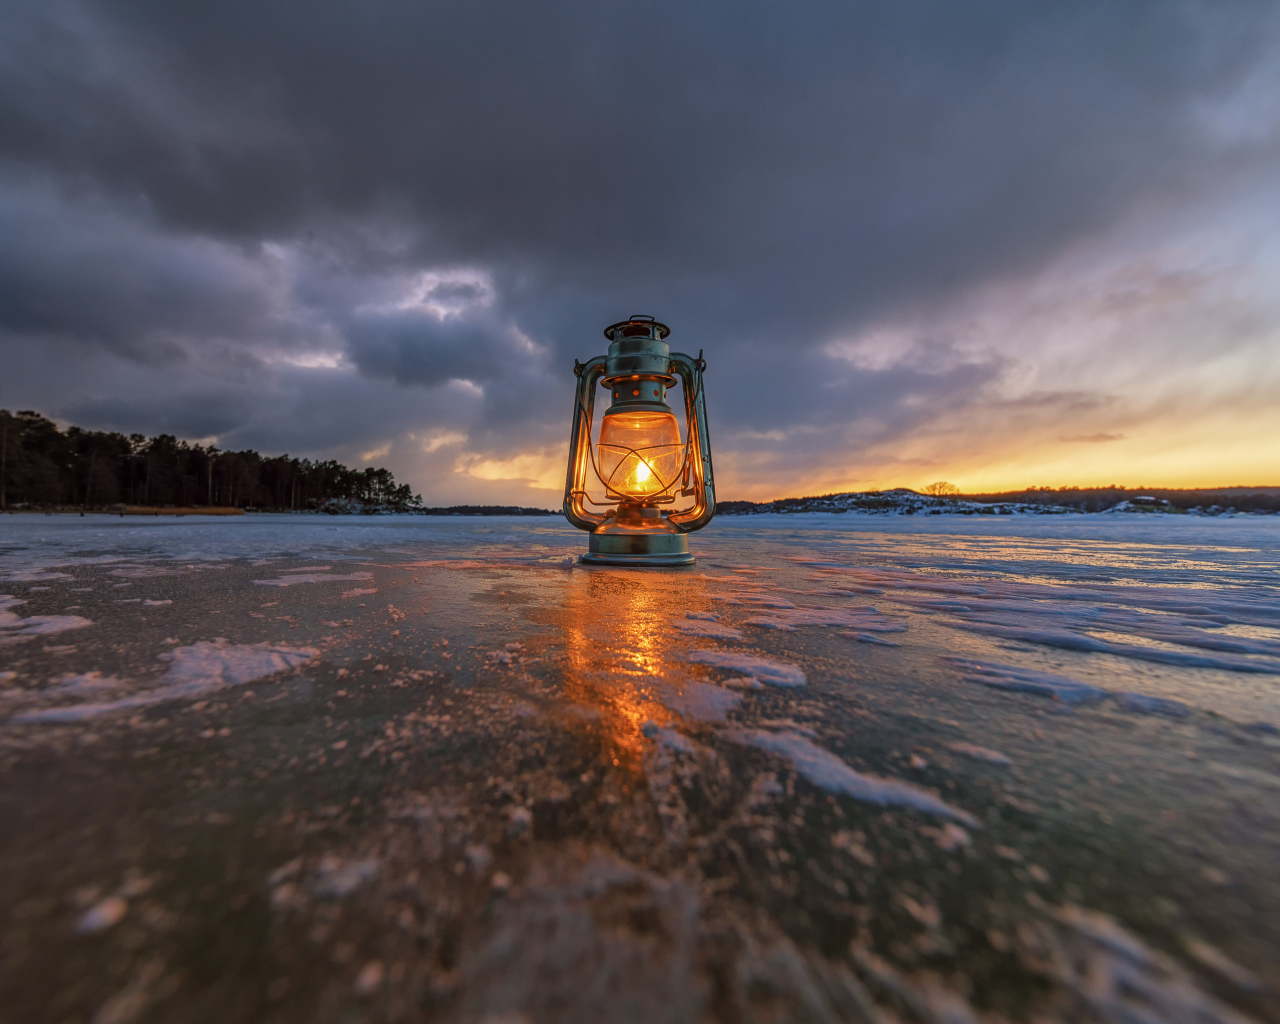 Керосиновая лампа стоит на покрытом льдом берегу